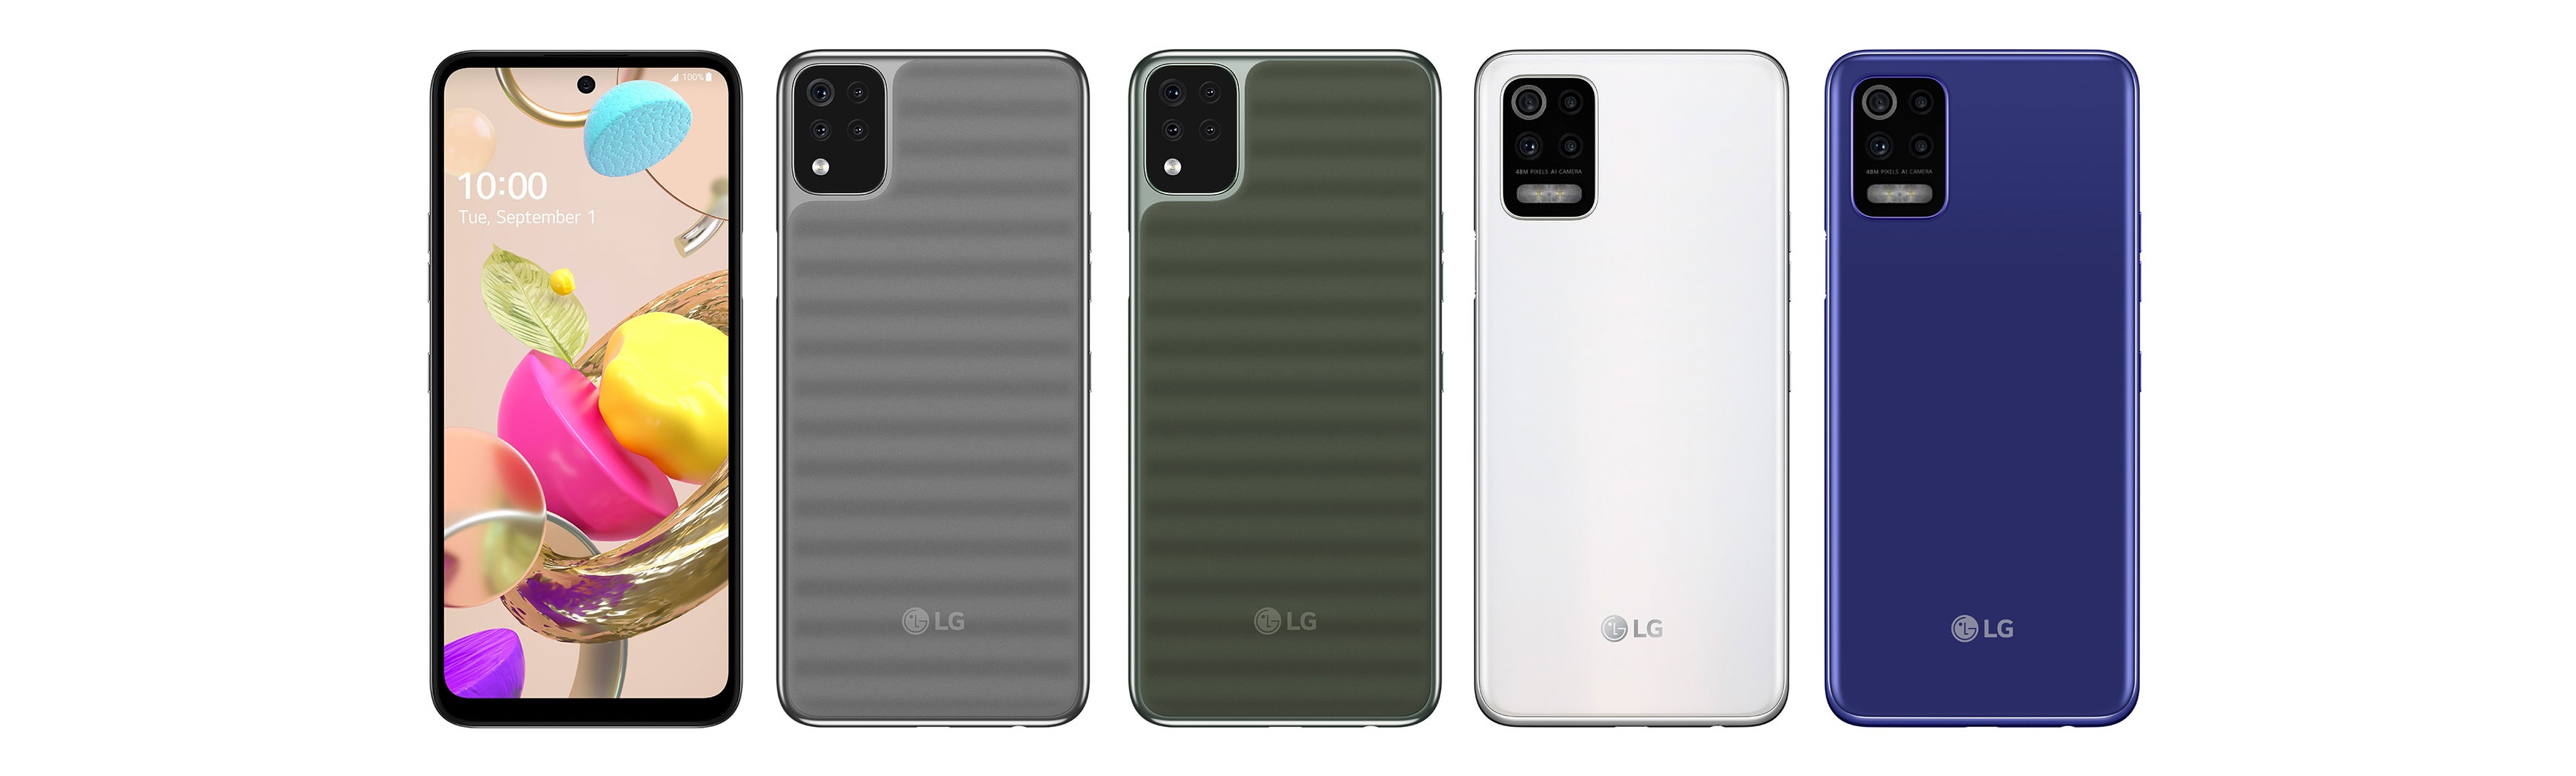 smartfon LG K42 LG K52 smartphone